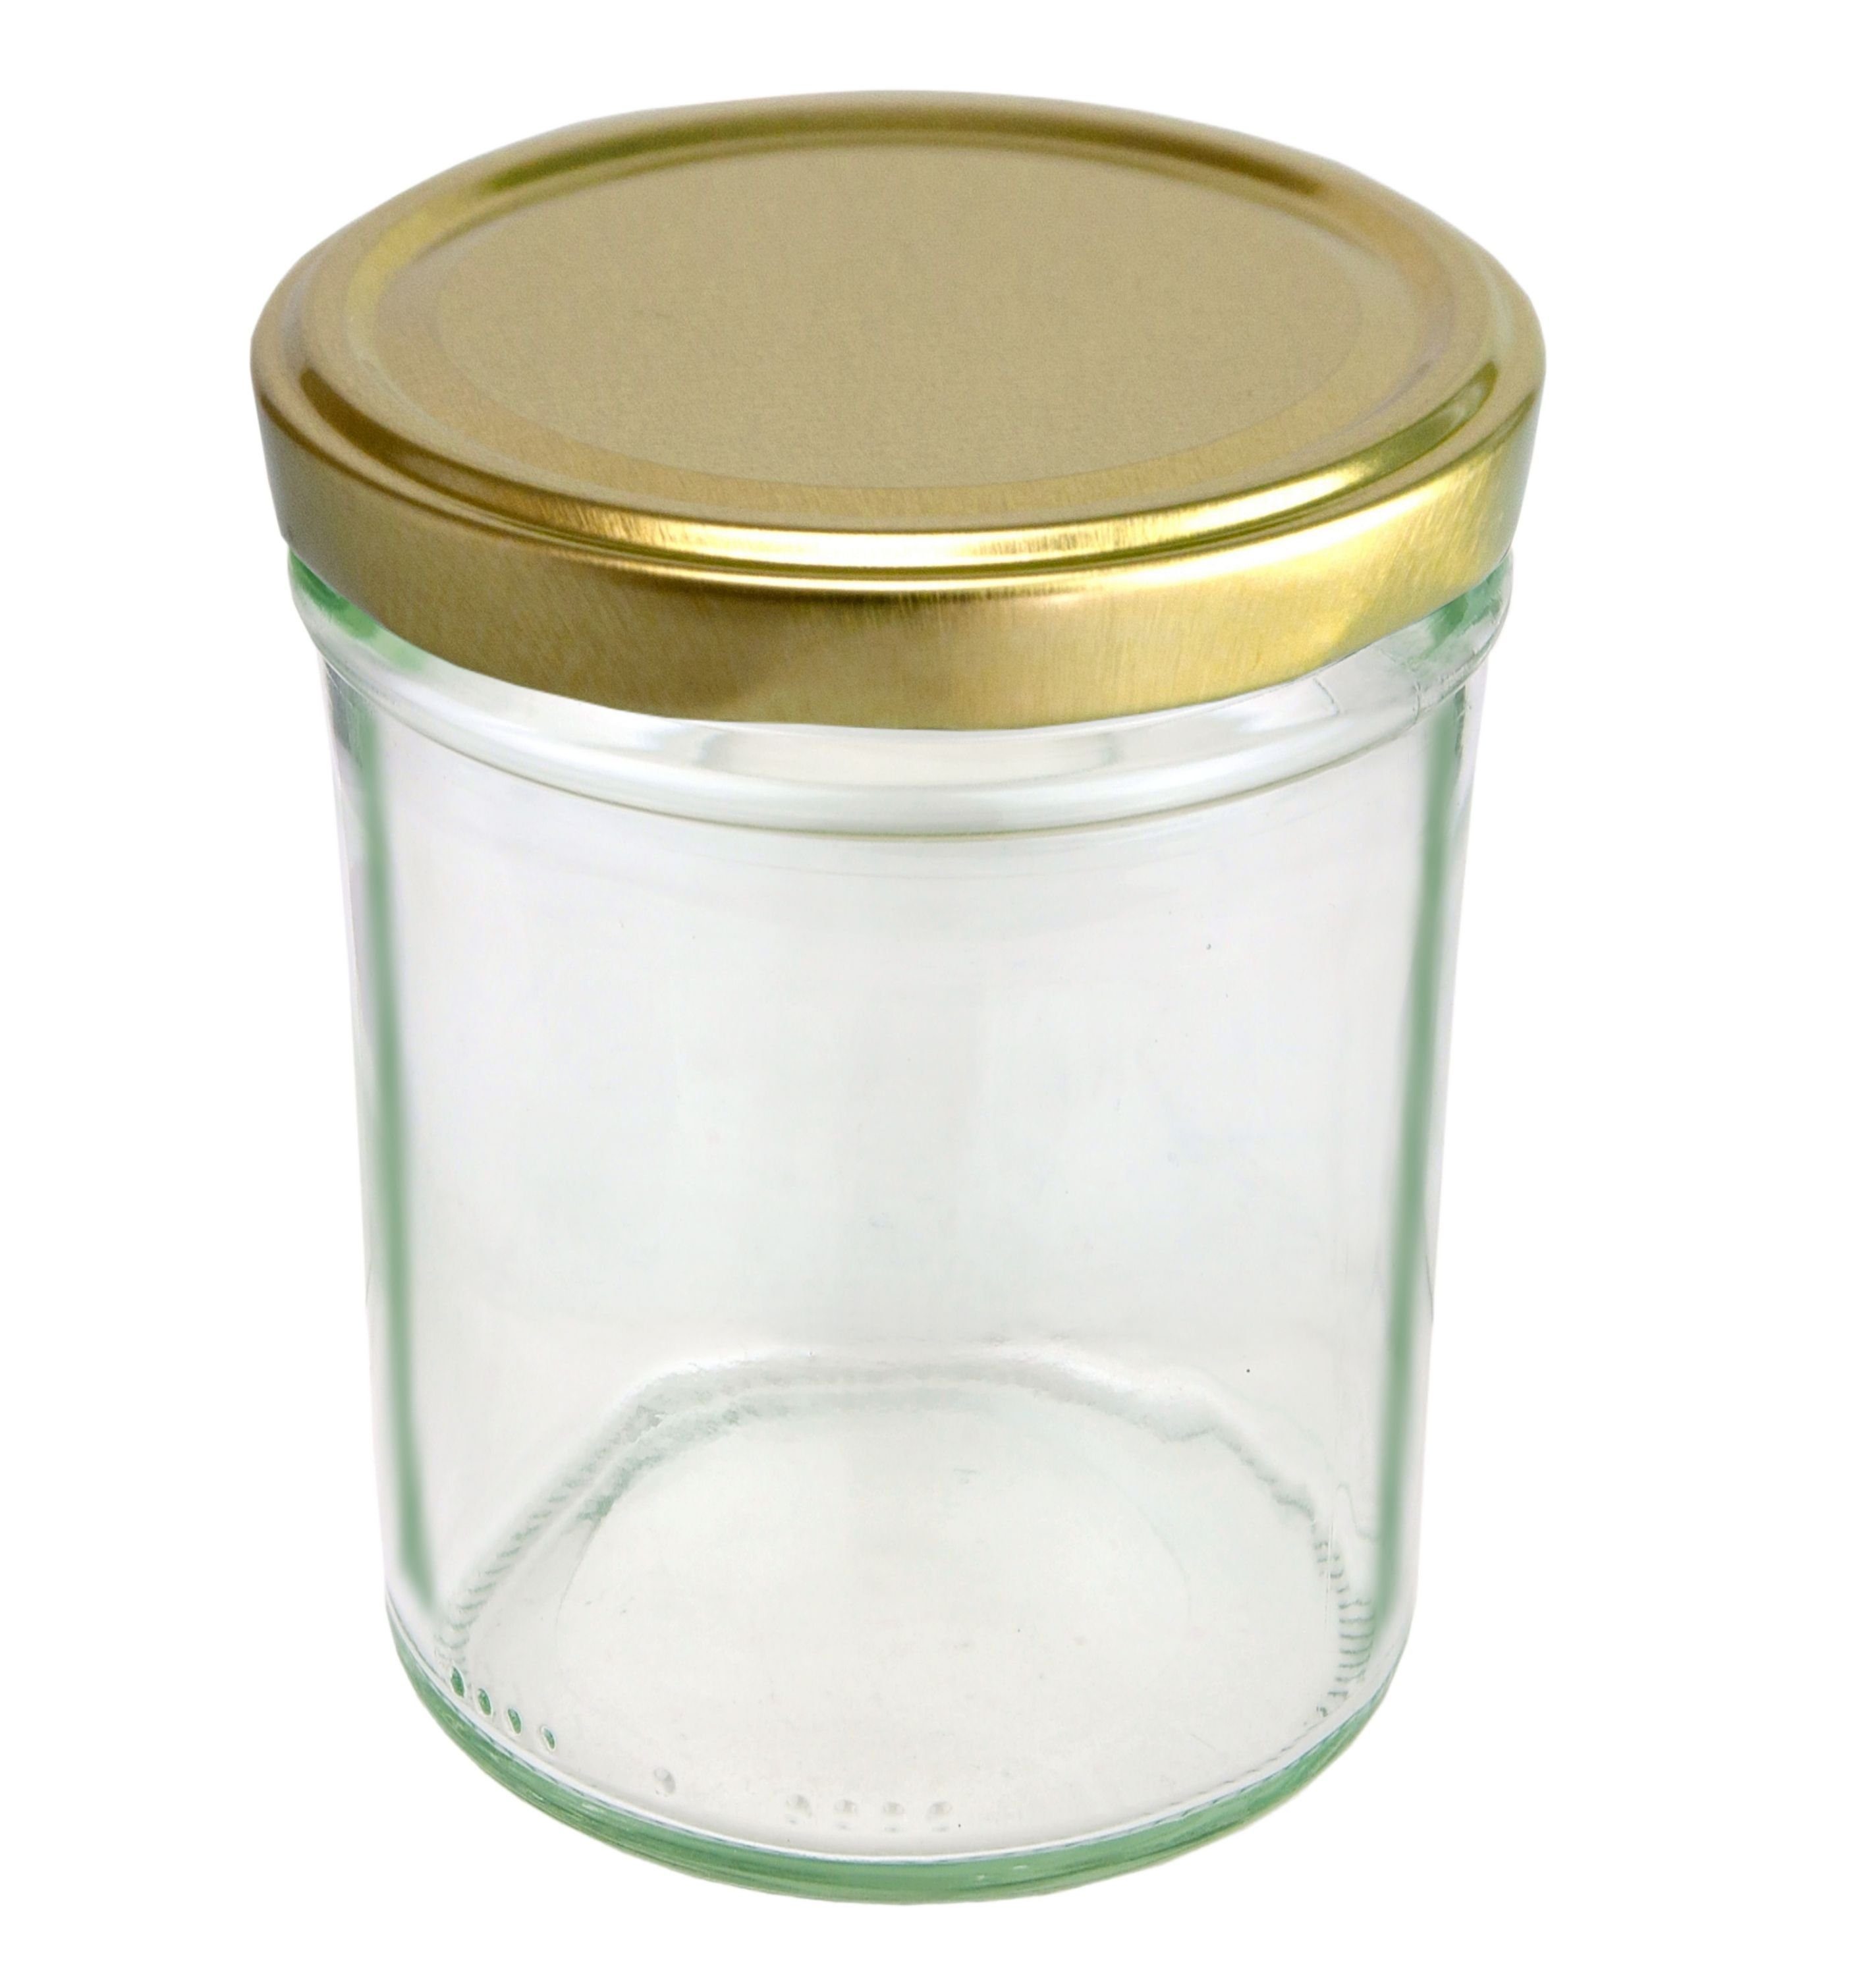 To MamboCat HOCH goldener 50er ml 230 66 incl. Deckel Einmachglas Sturzglas Set Rezeptheft, Glas